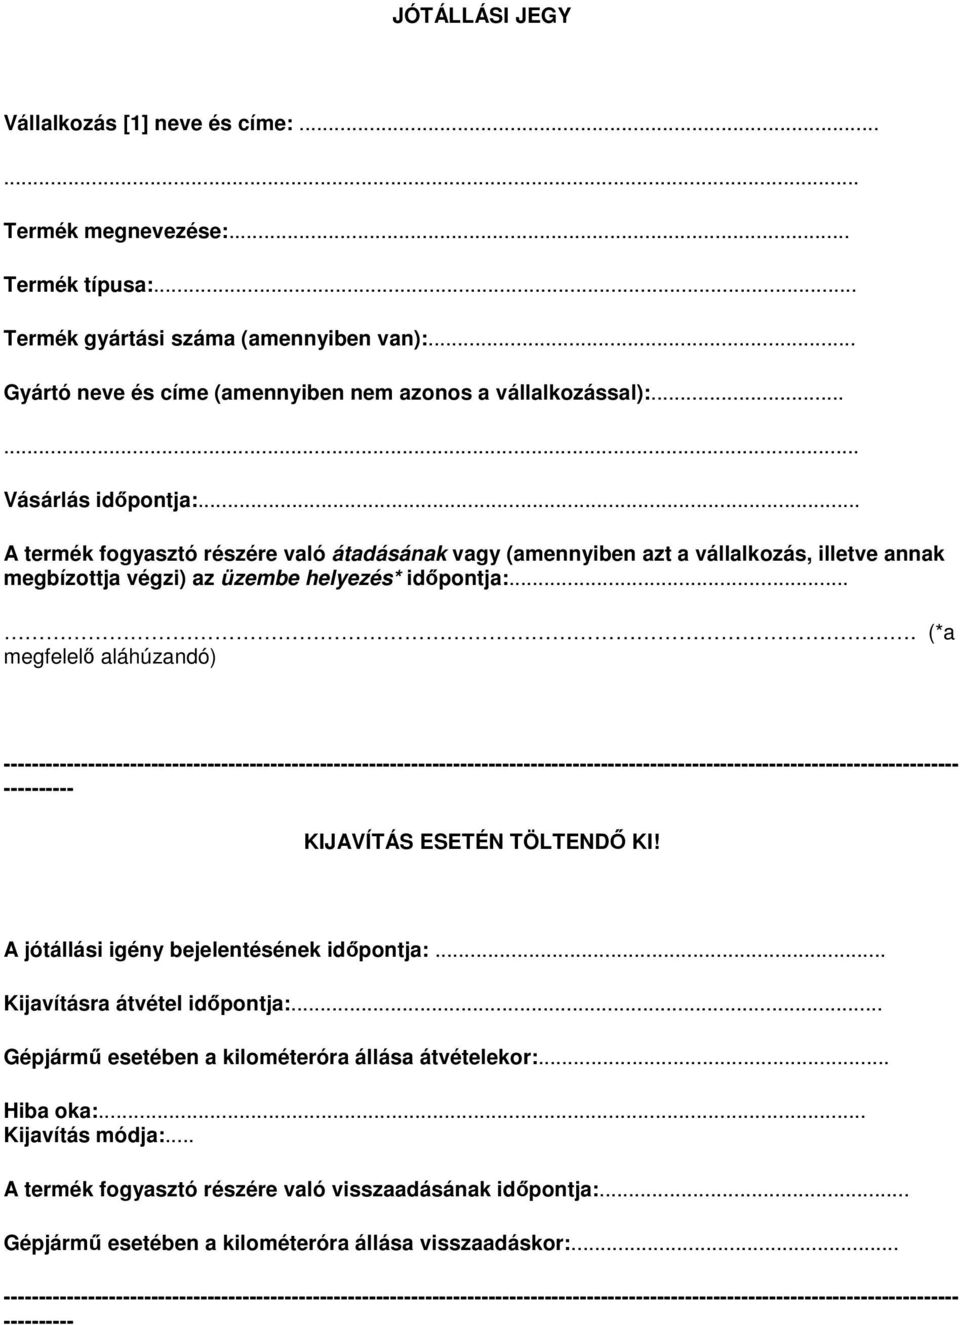 Általános információk a jótállási jegy minta alkalmazásával kapcsolatban -  PDF Ingyenes letöltés